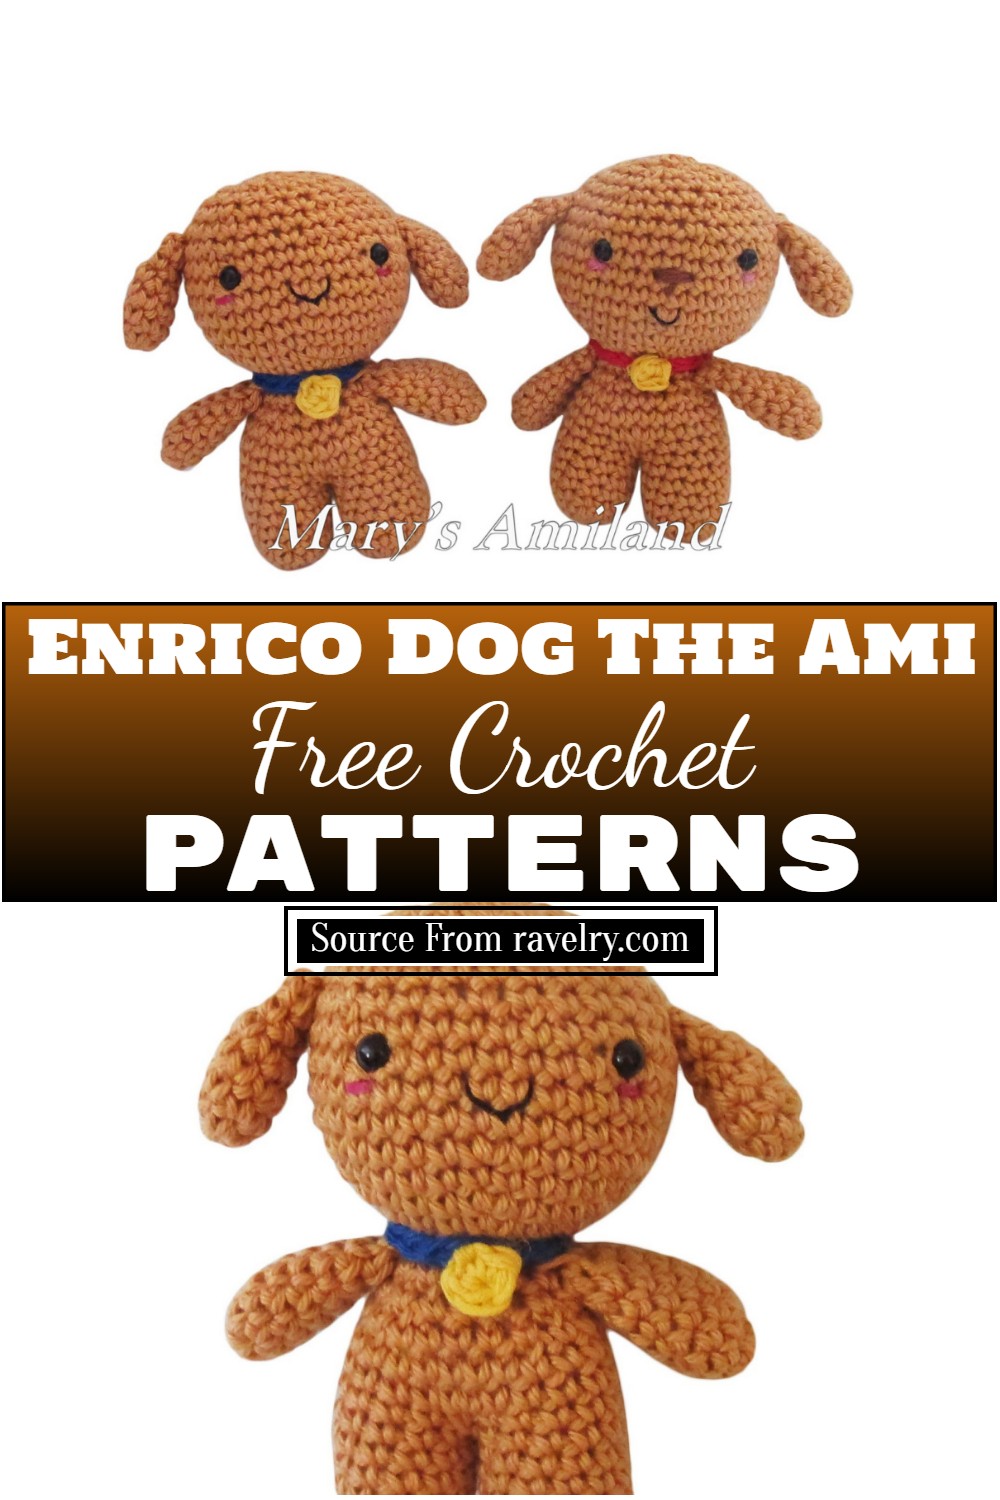 Free Crochet Enrico Dog The Ami